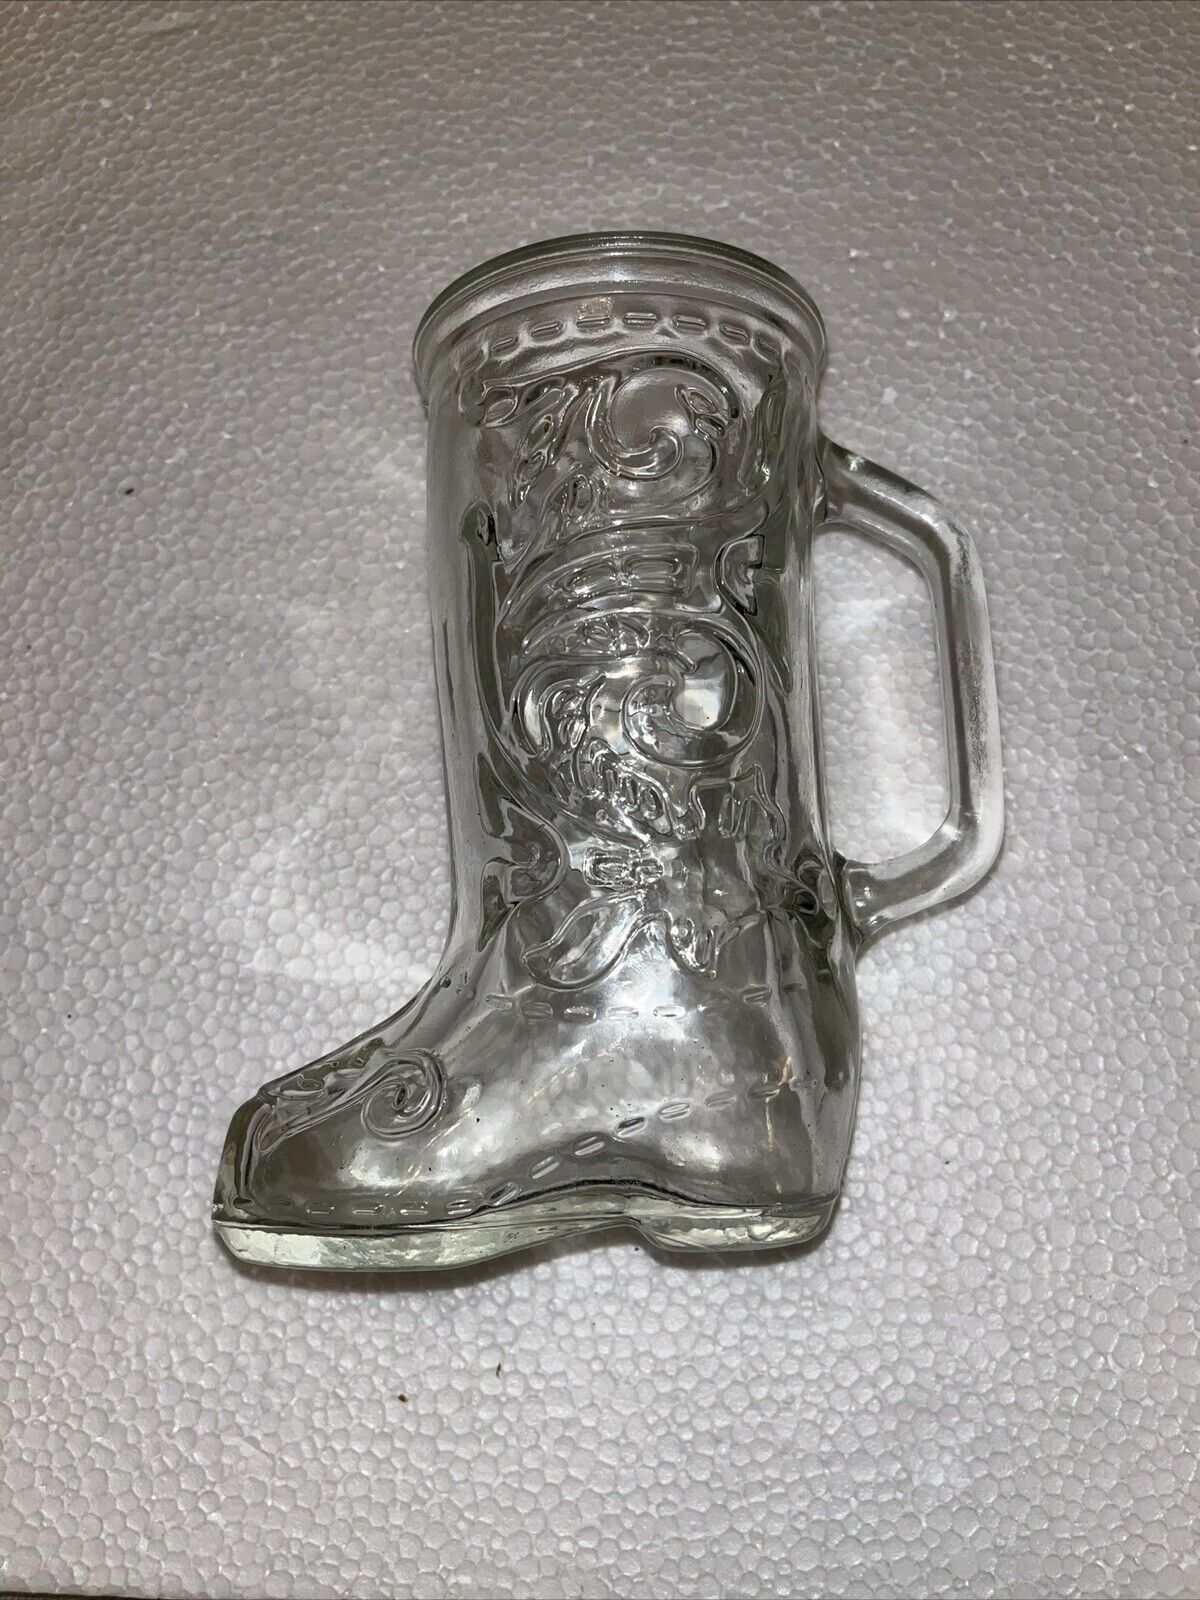 Boot Mug Vintage Glass  Embossed Design